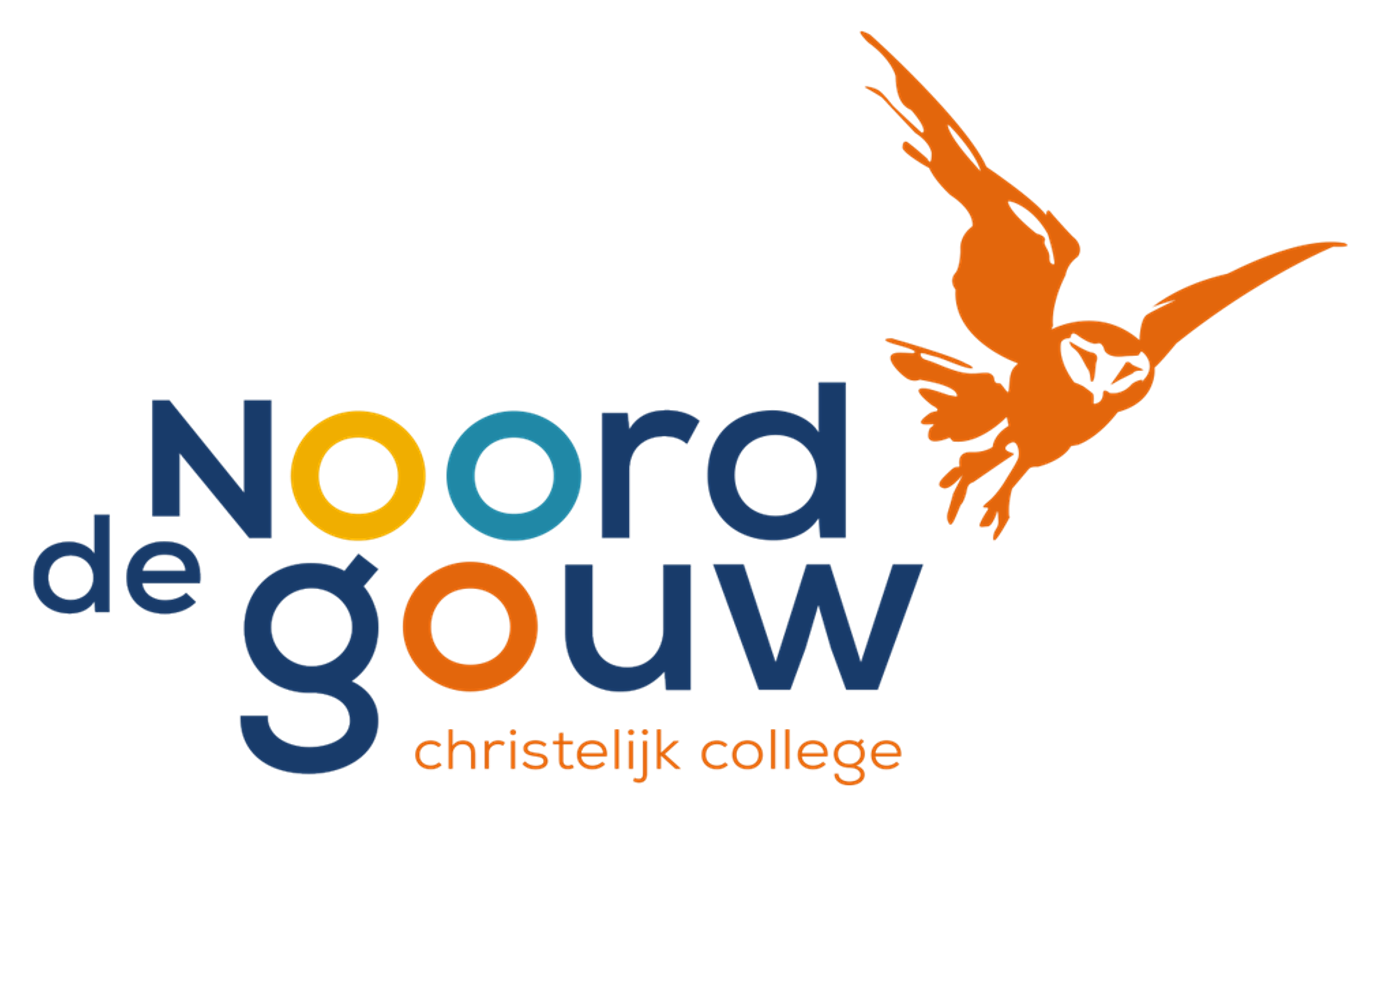 (c) Noordgouw.nl